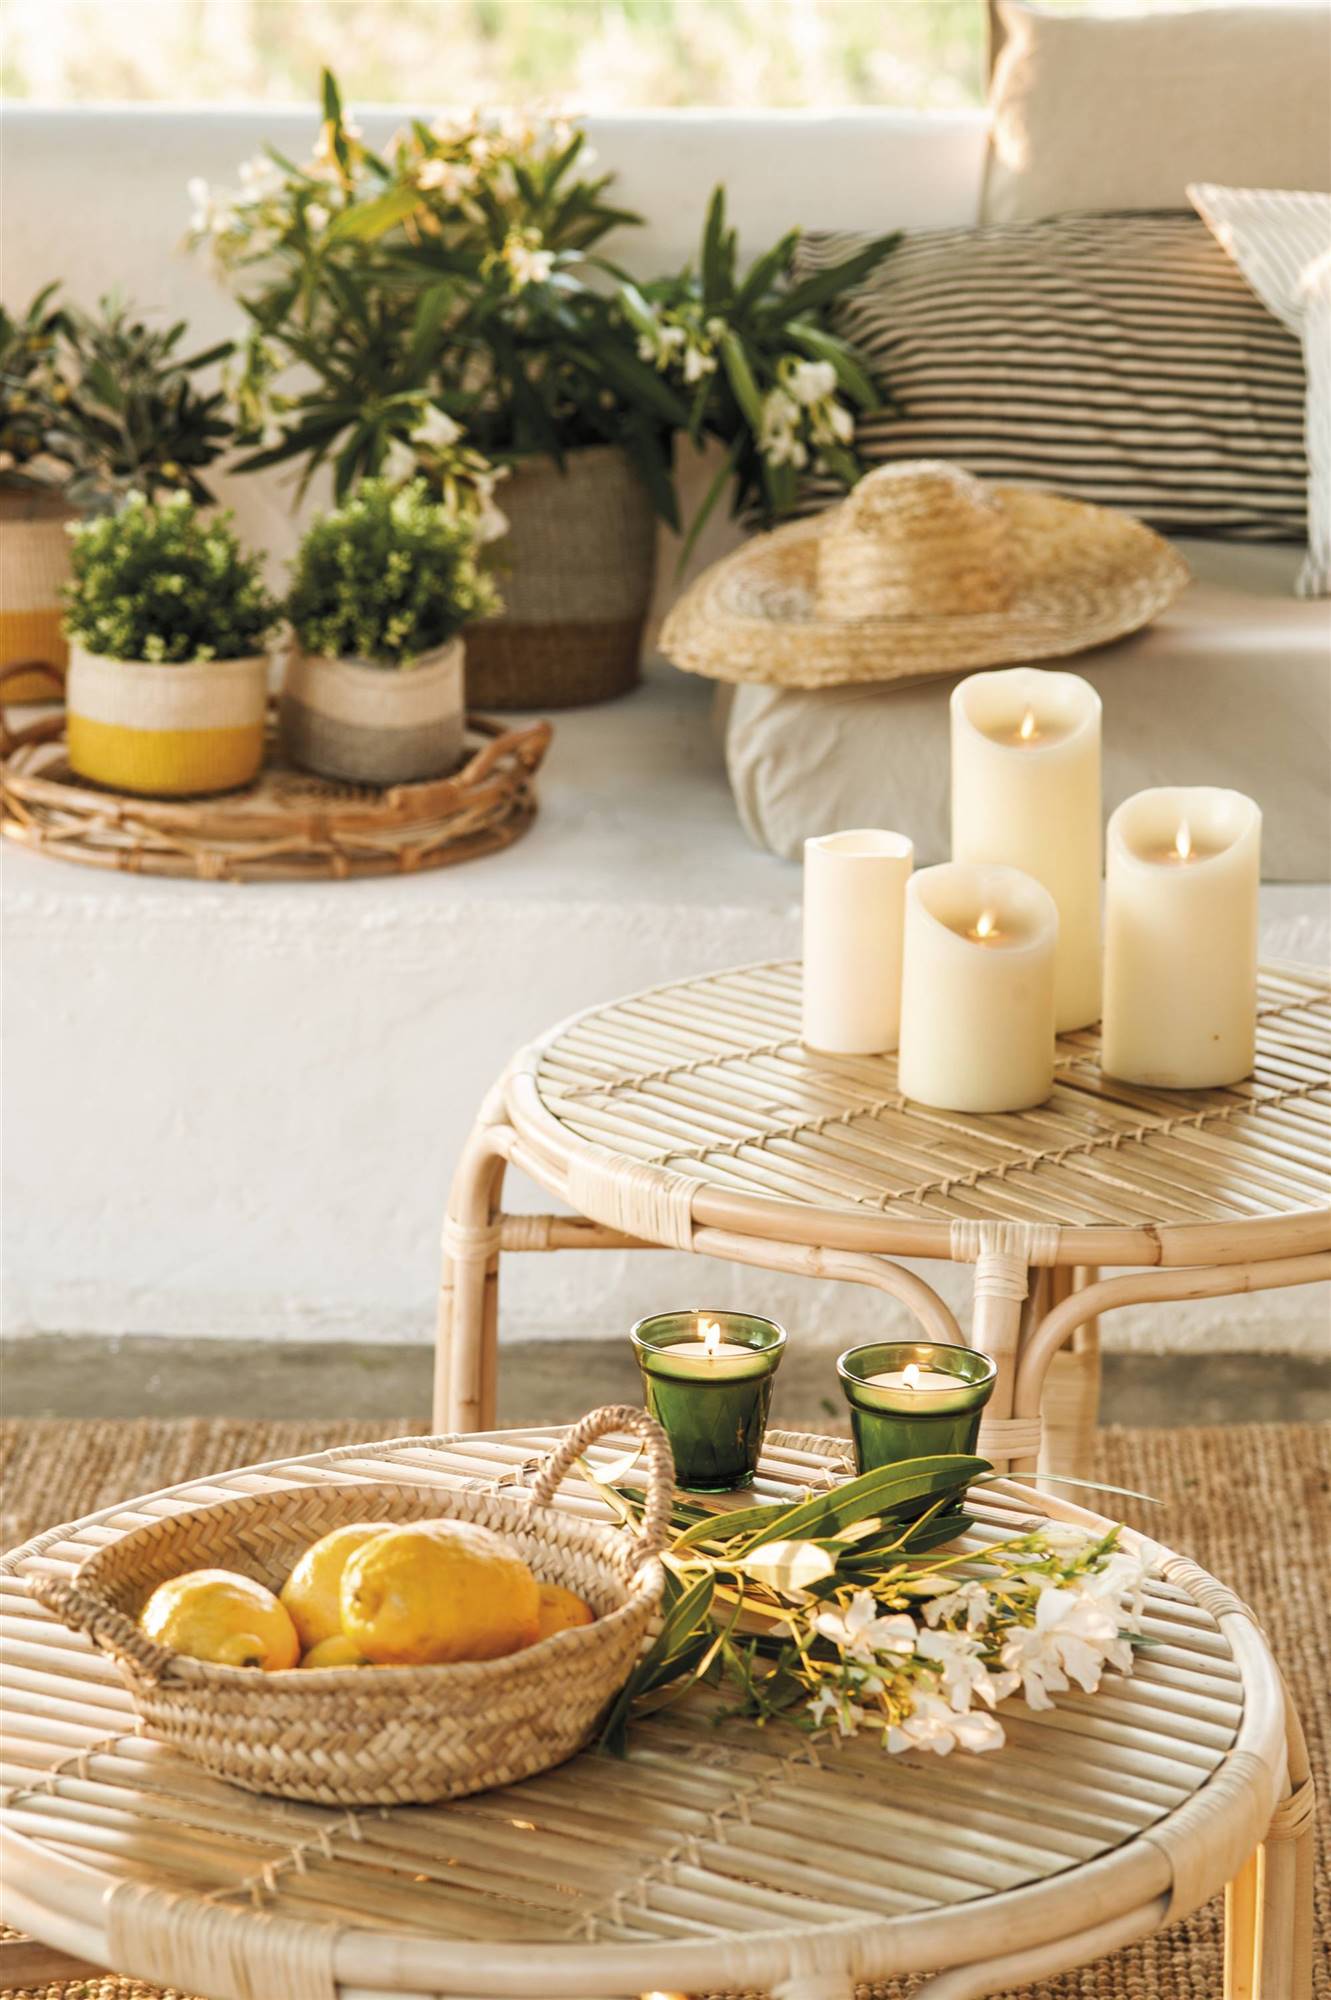 Terraza con mesa de centro de fibras con velas y cesta con limones.